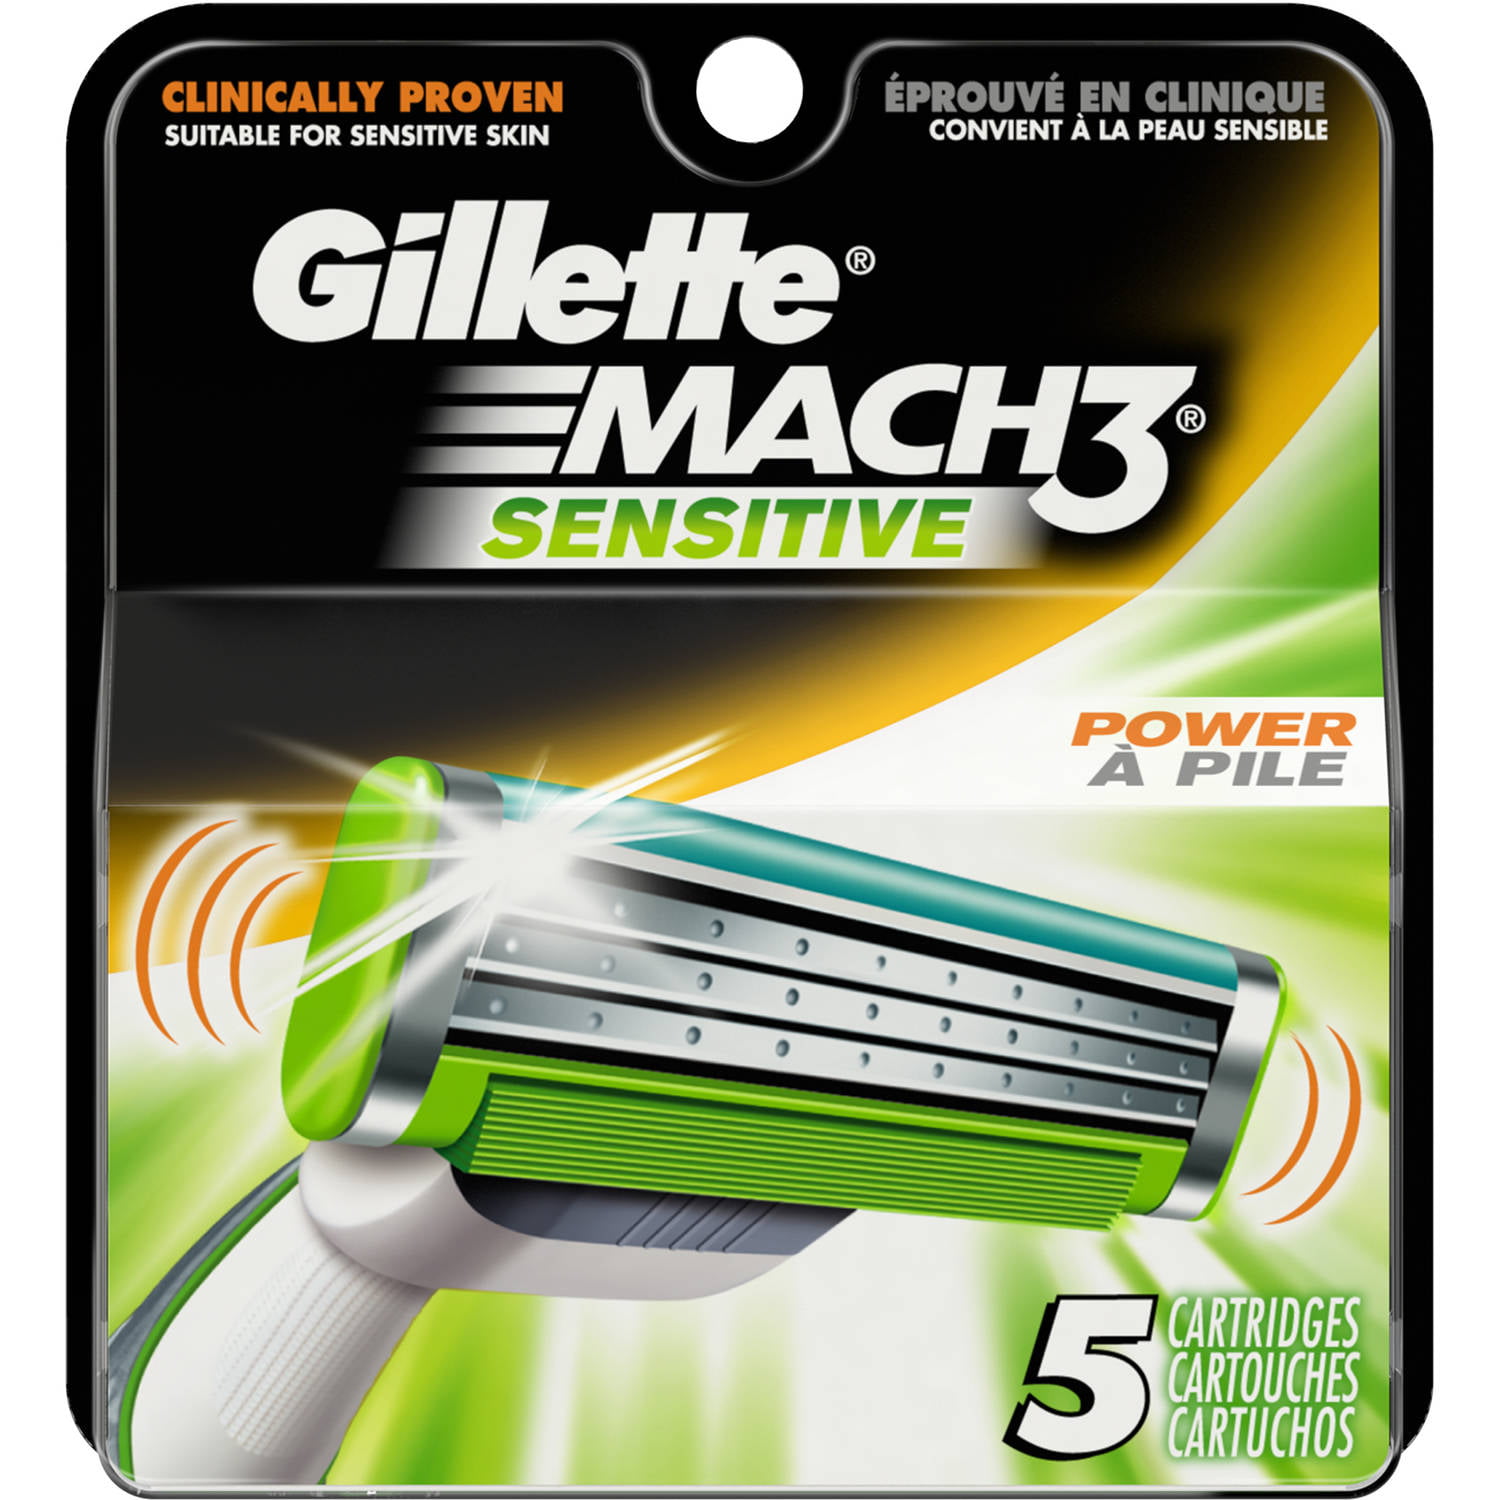 Gillette Mach3 Sensitive Cartridges, 5 count - Walmart.com